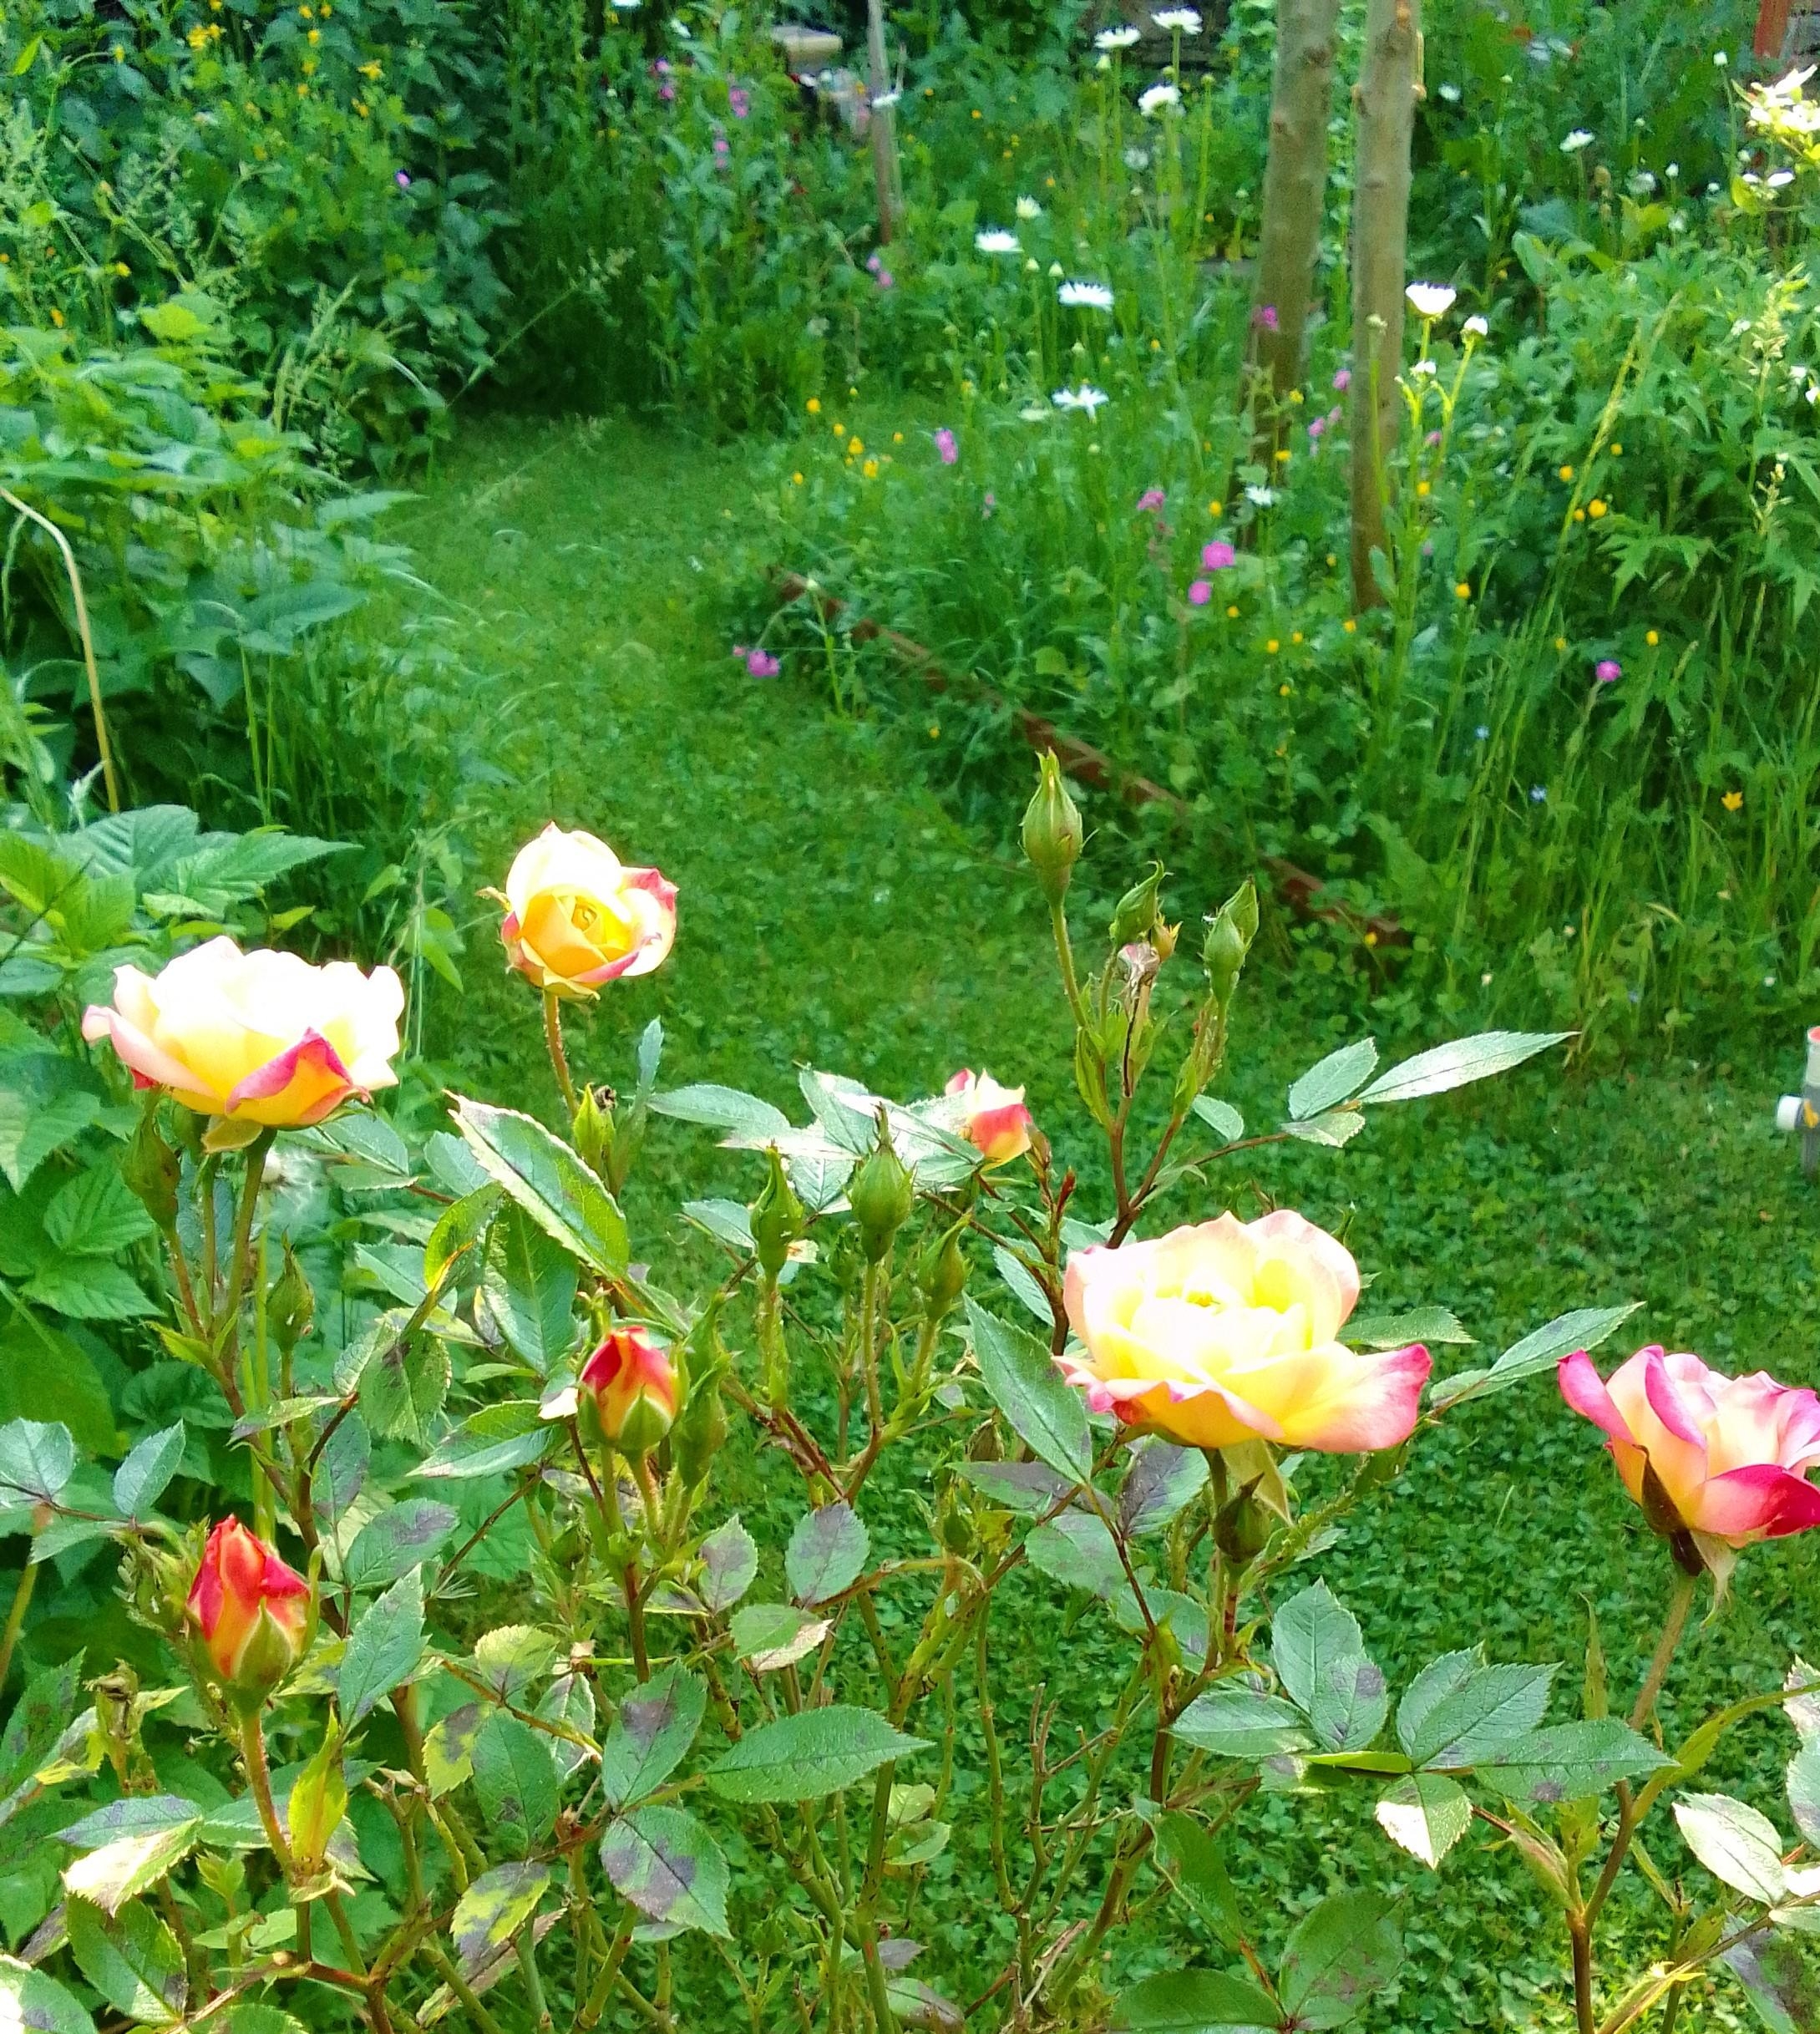 #Garten #Rosen 
einfach wild wachsen lassen